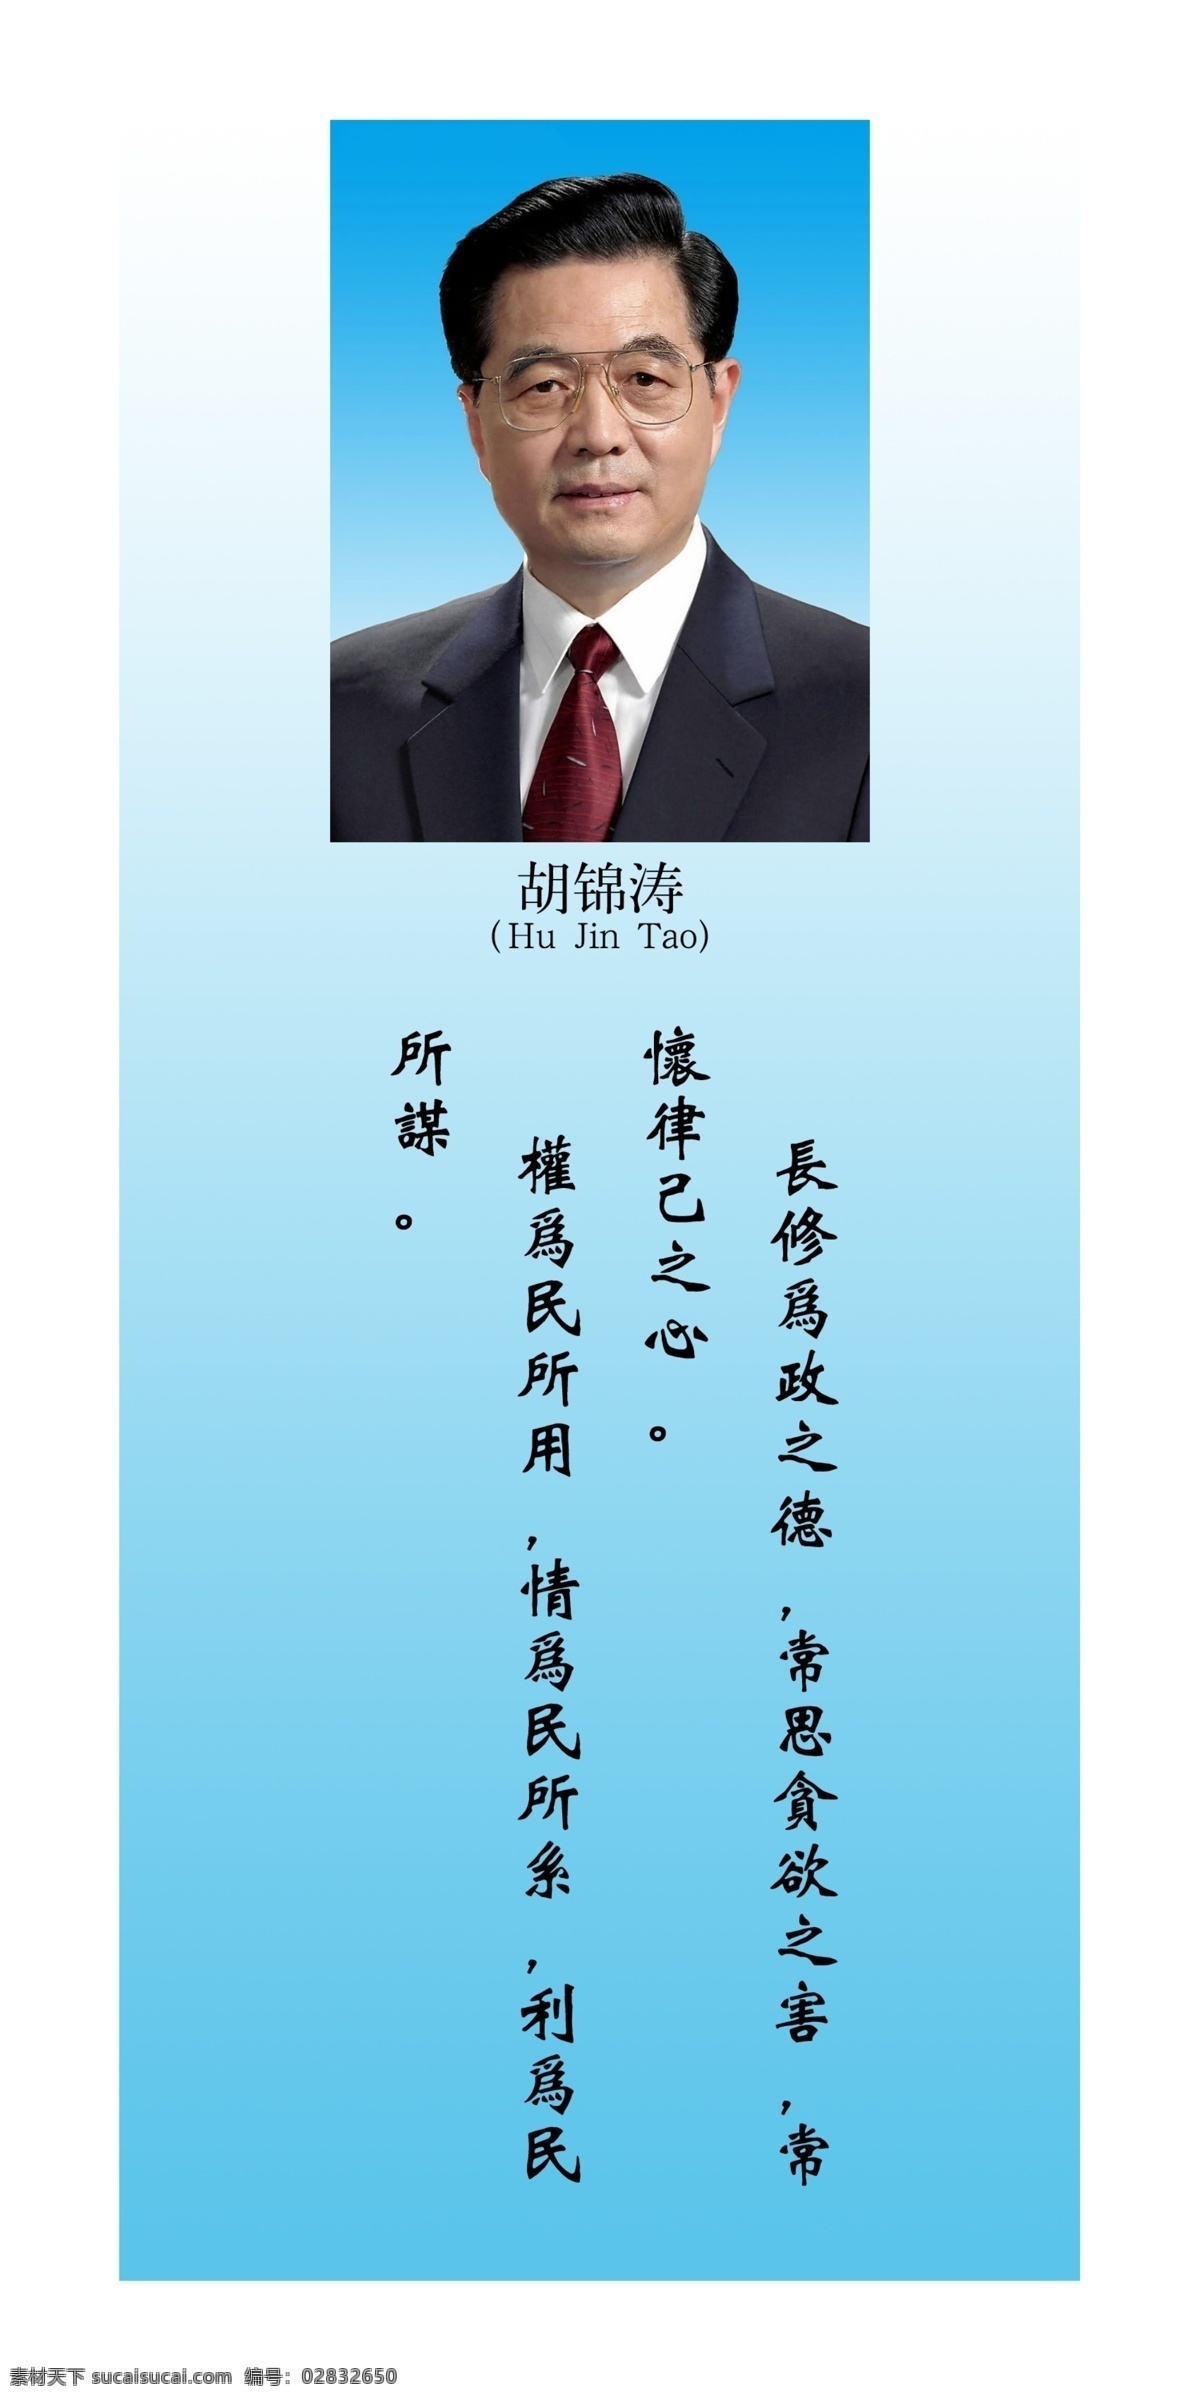 伟人名言 伟人 名言 国家领导人 胡锦涛 党建 展板模板 广告设计模板 源文件